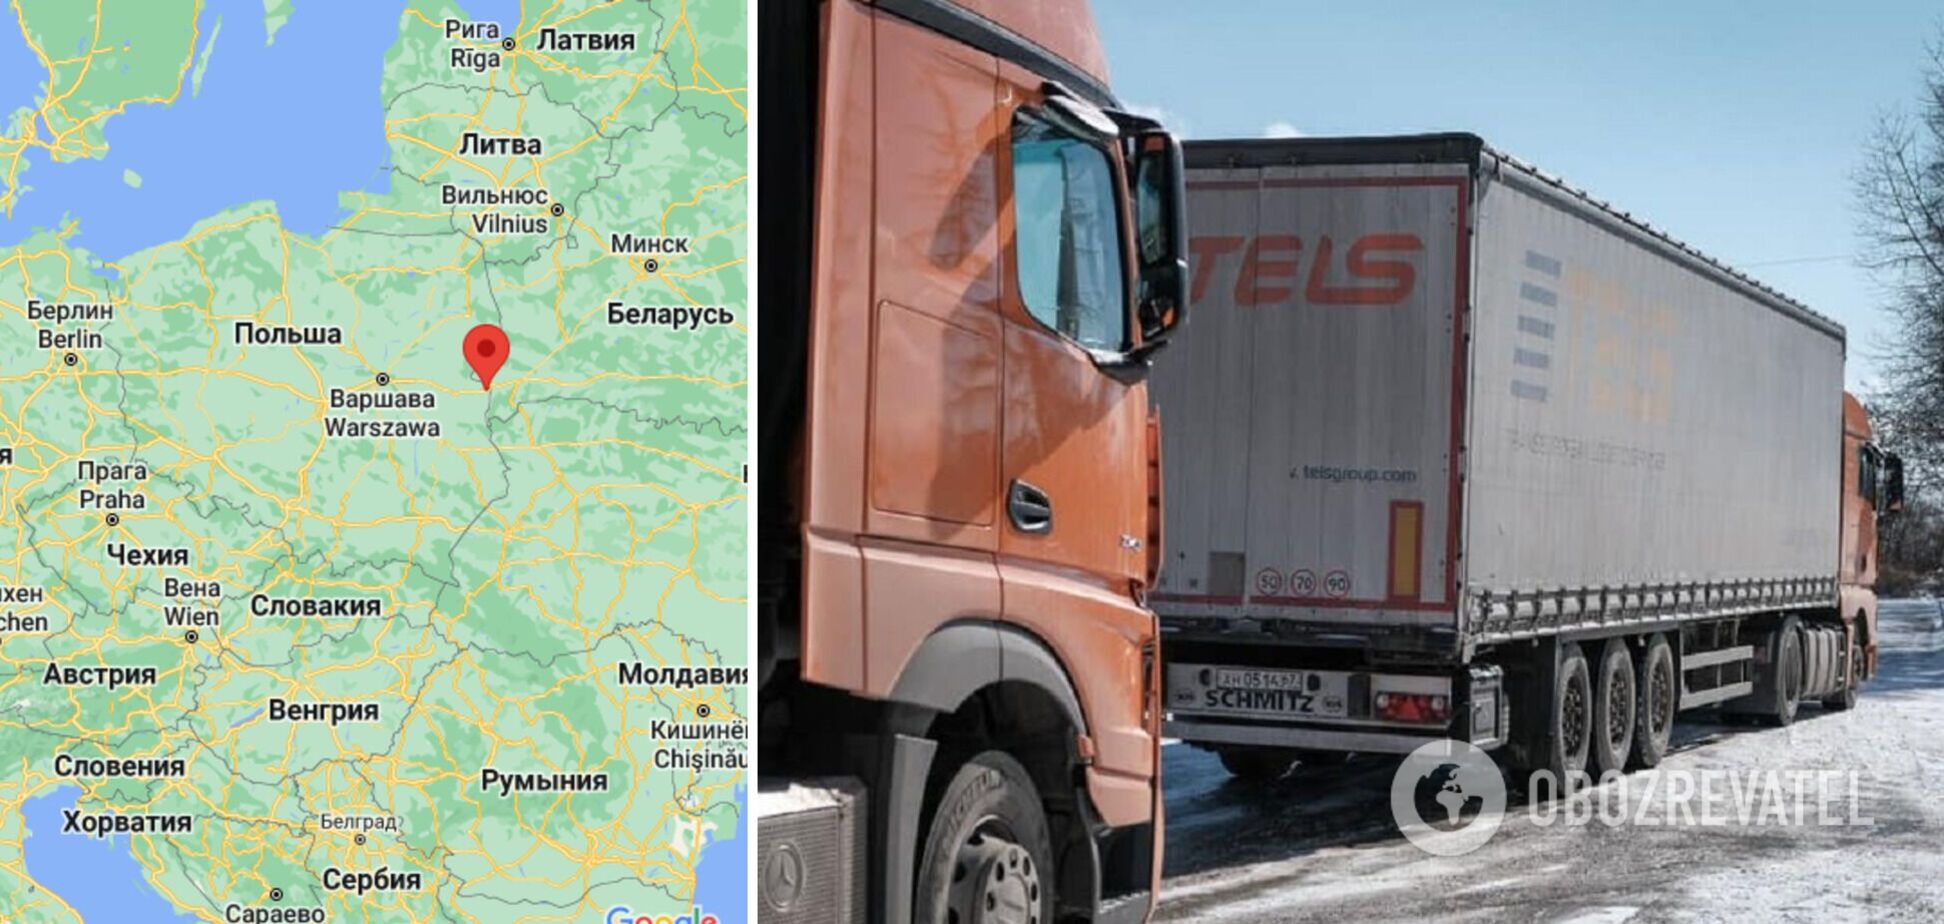 Фуры на российских номерах везут подозрительные грузы из Германии в Беларусь